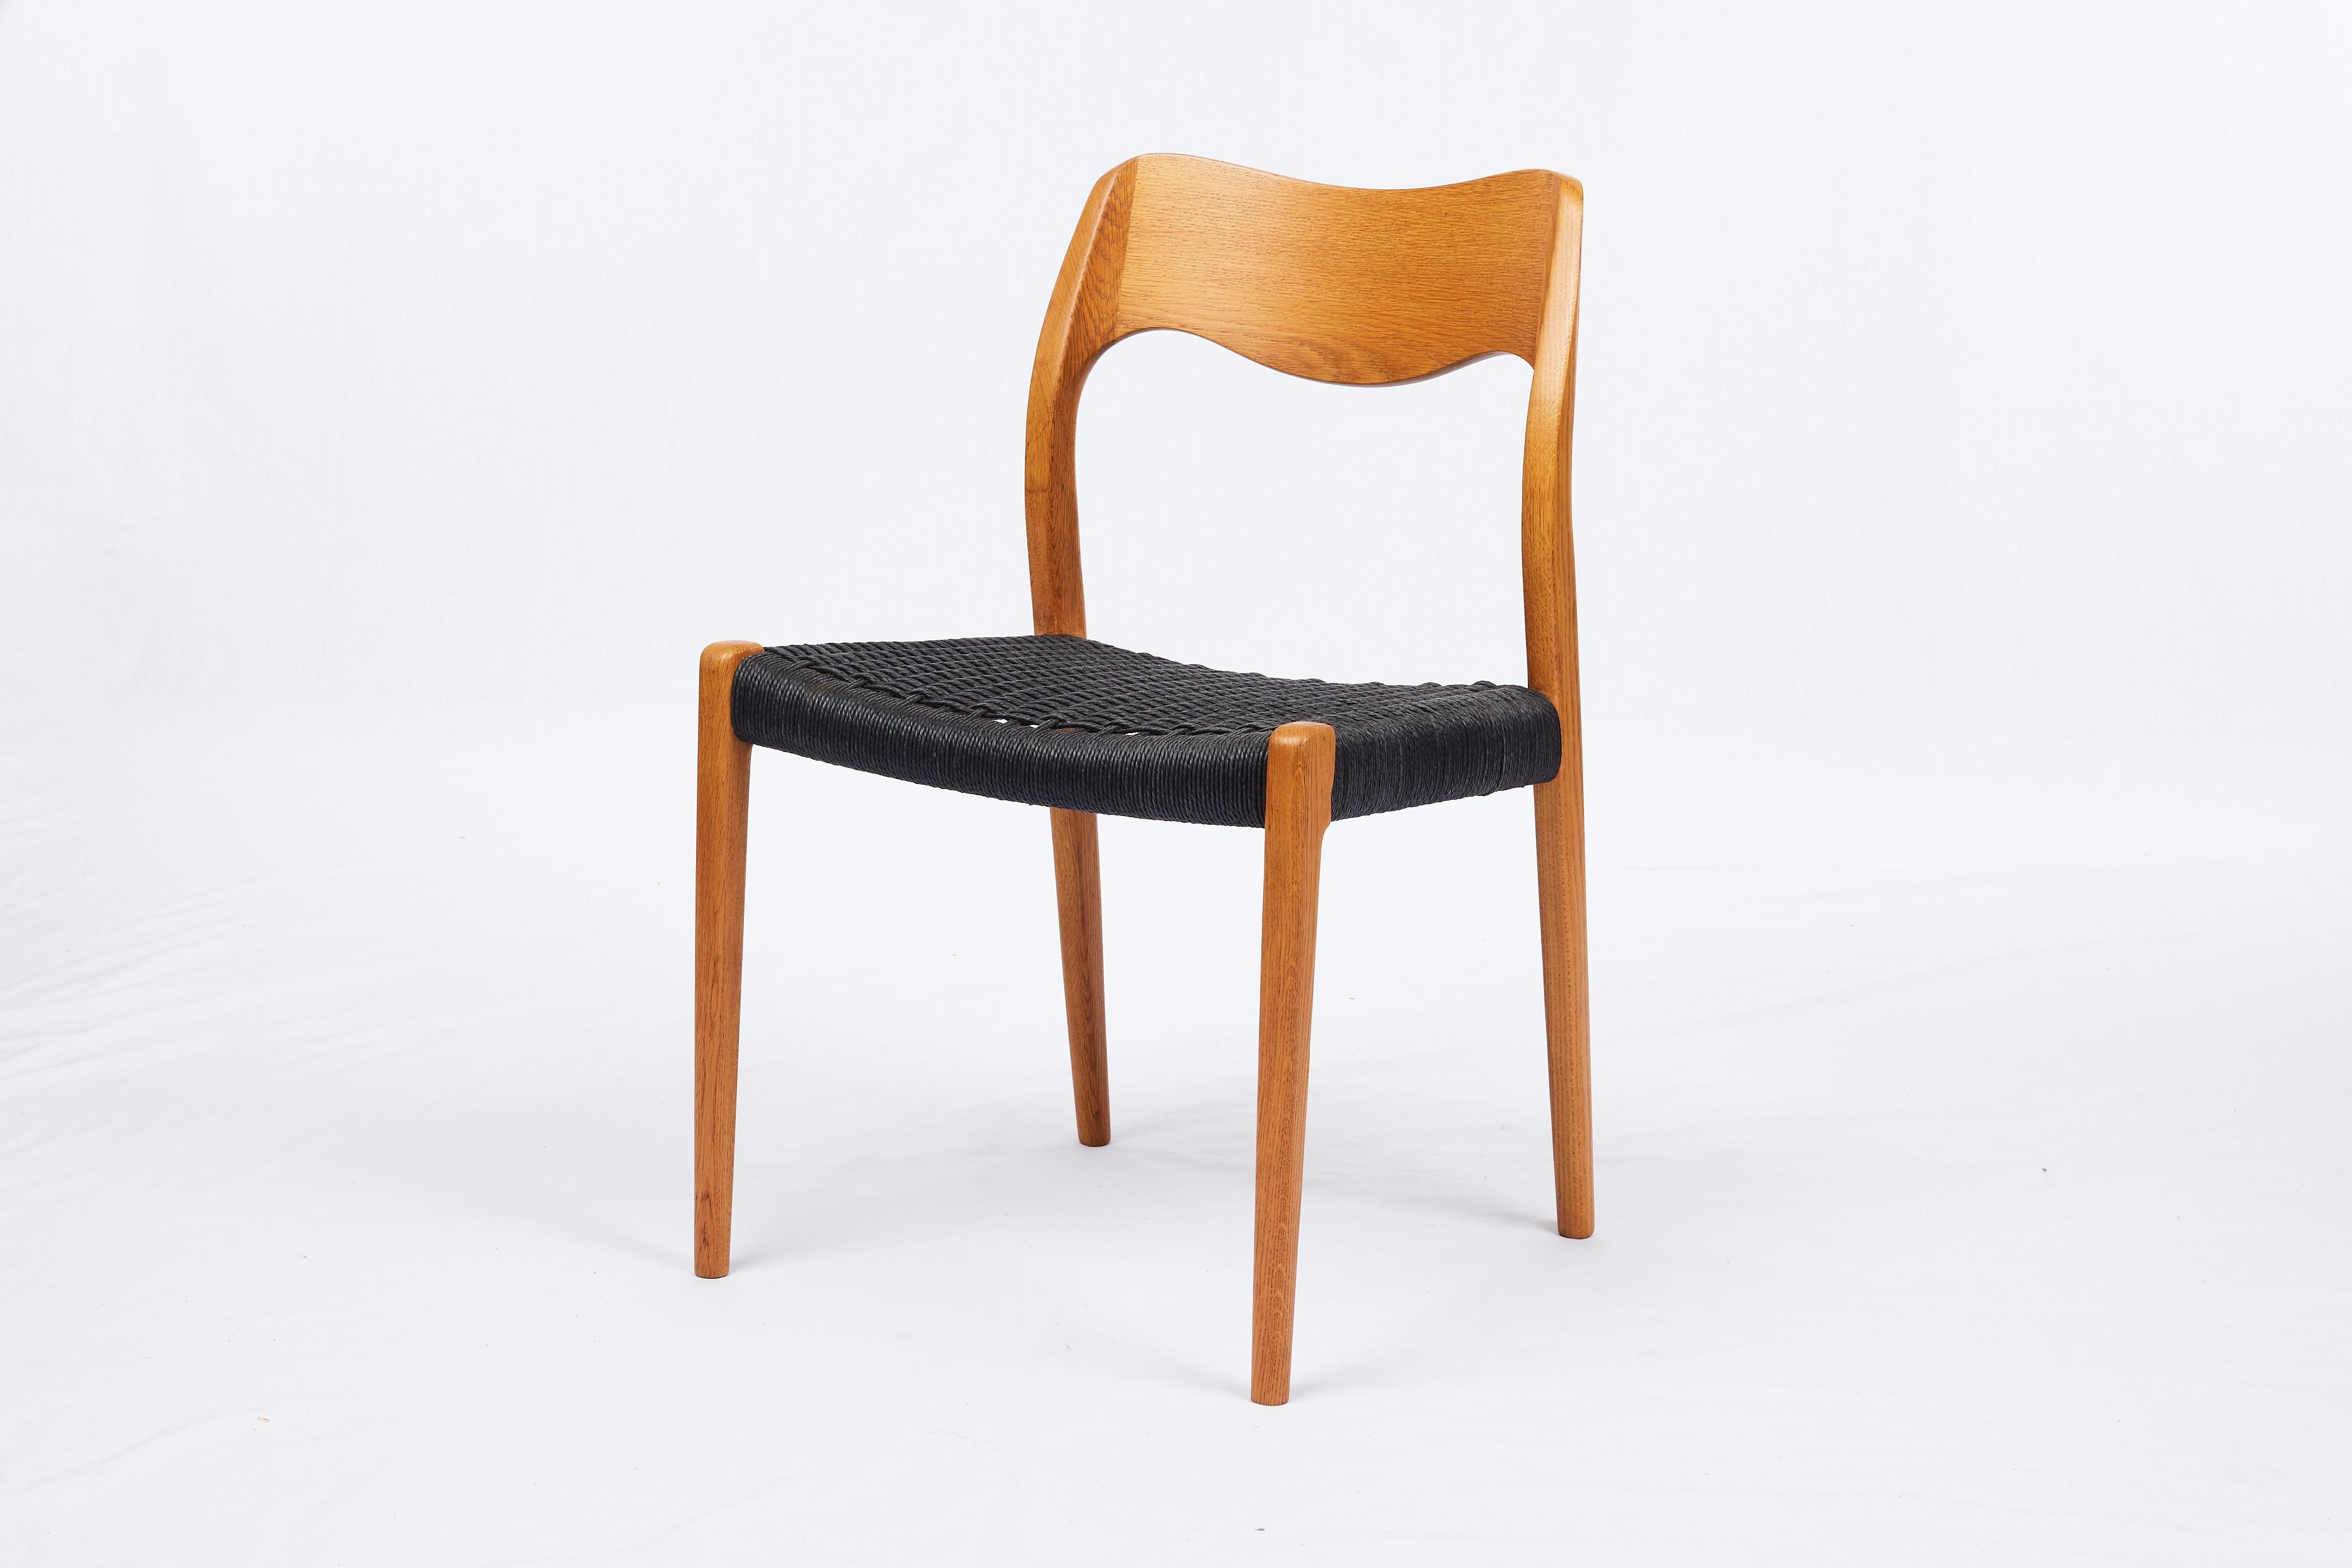 Satz von 4 Niels Moller #71 Esszimmerstühlen mit schwarzem Papierkordelsitz, entworfen 1951 und hergestellt von J. L. Moller Mobelfabrik.